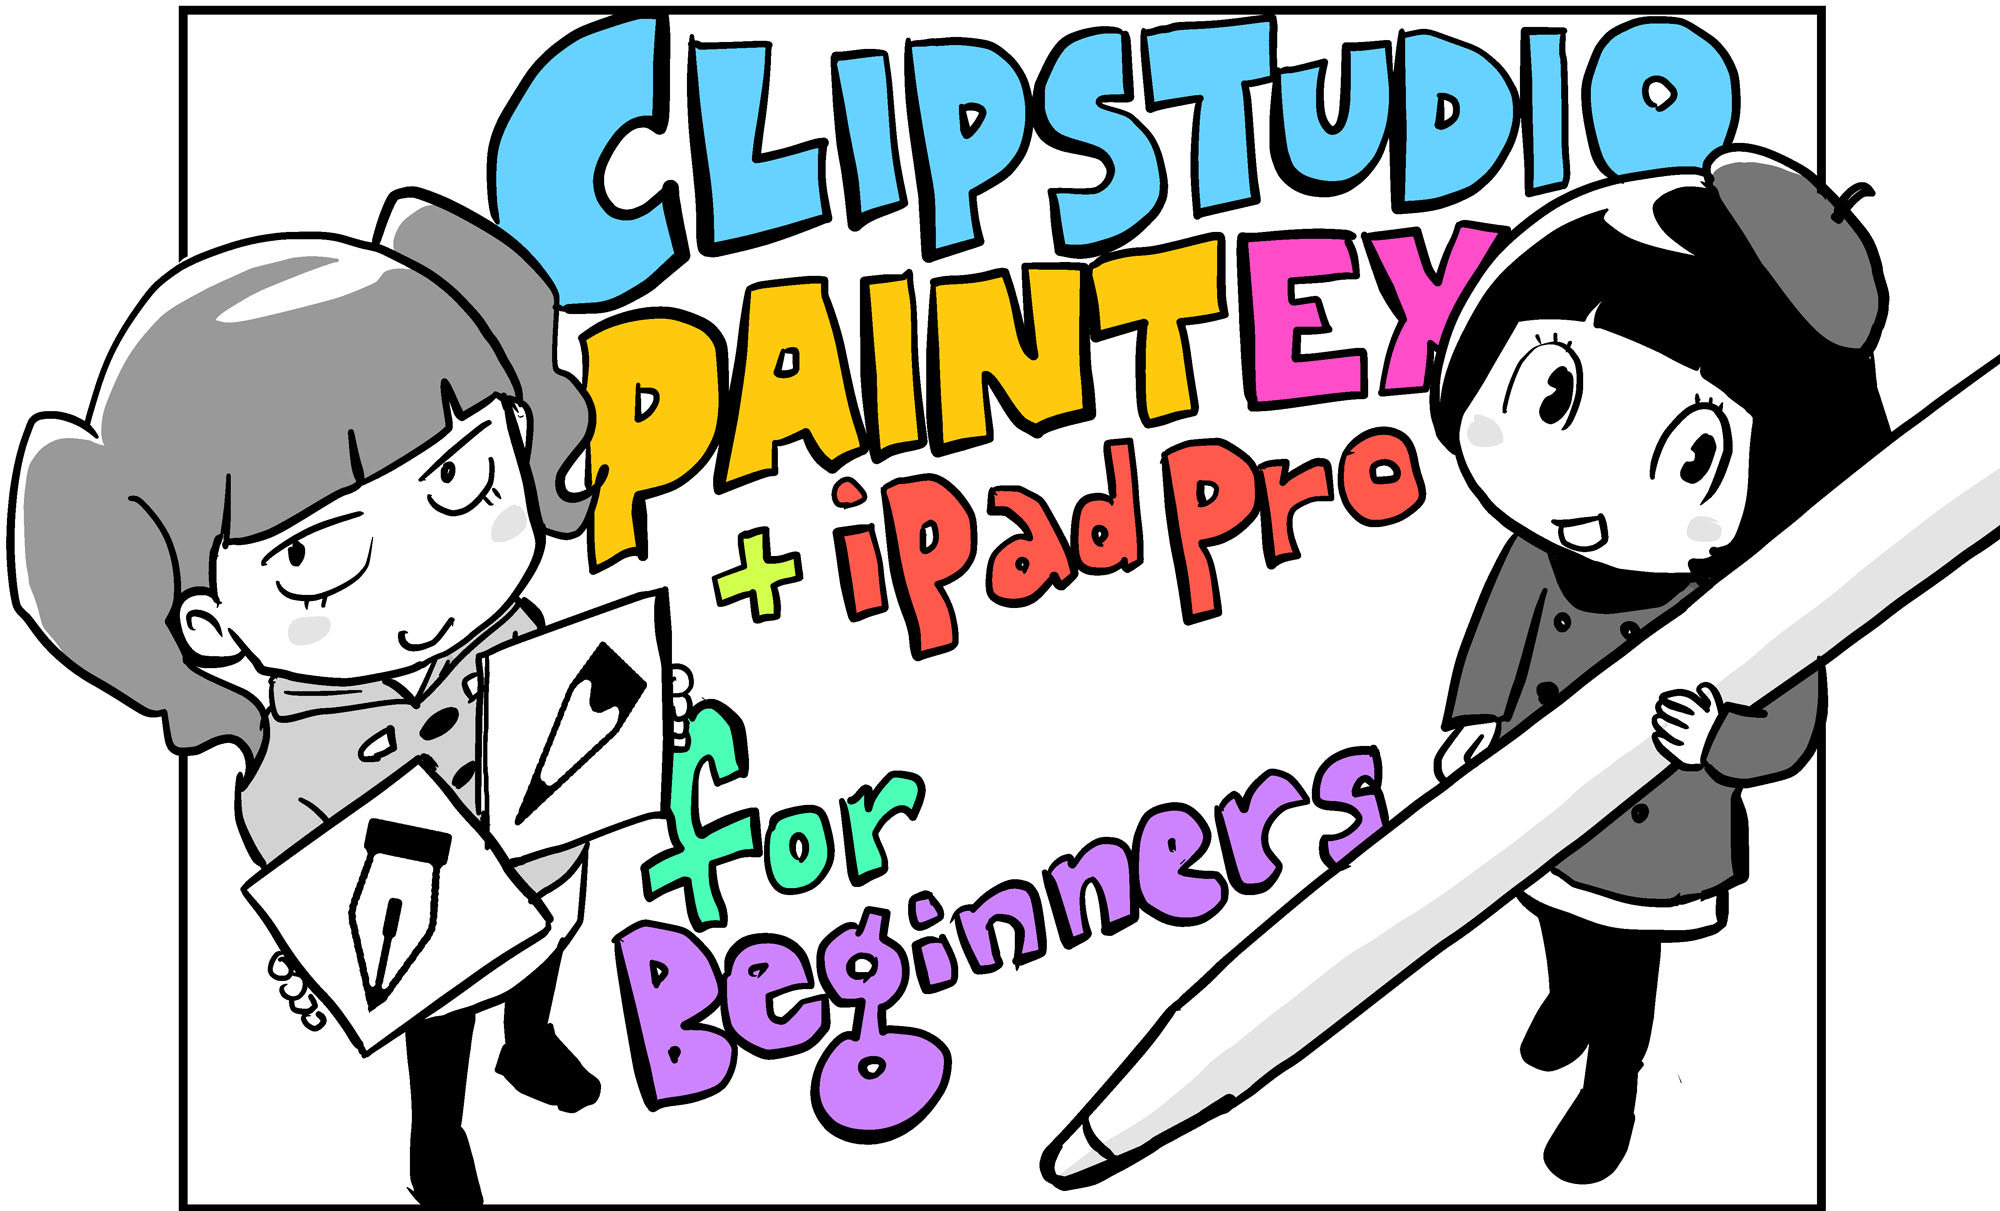 漫画家 青木俊直さんが教えてくれる 絵の要素を層で分ける 超便利な レイヤー の考え方 青木俊直 Clip Studio Paint Ex Ipad Pro For Beginners 第2回 Pictures